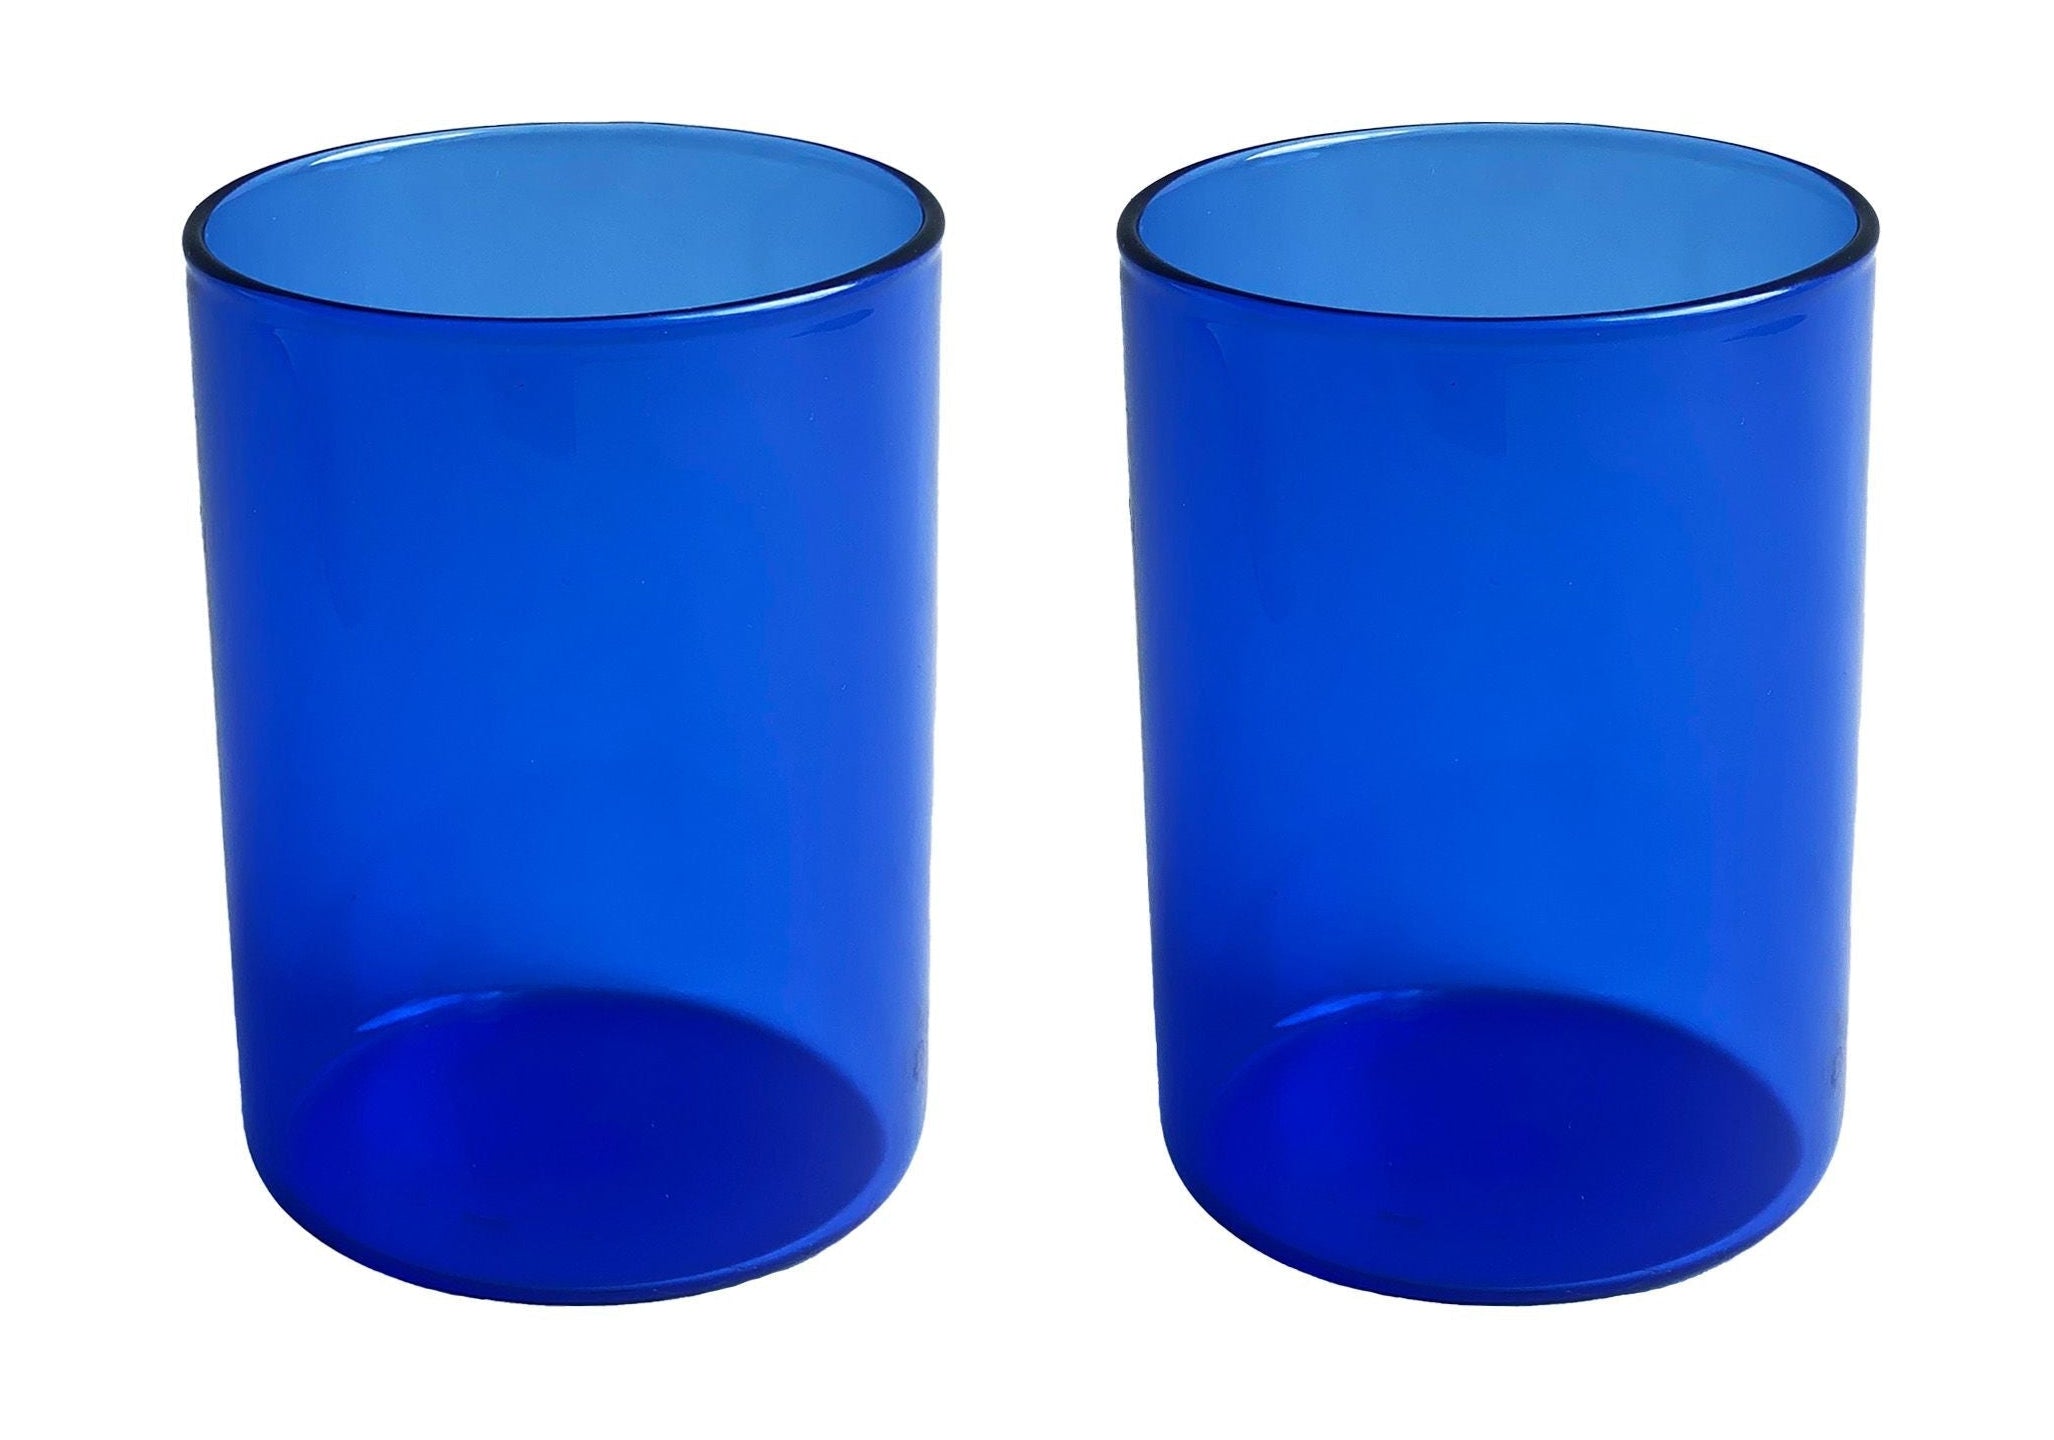 Juego de vaso de beber favorito de 2, azul de la carta, azul